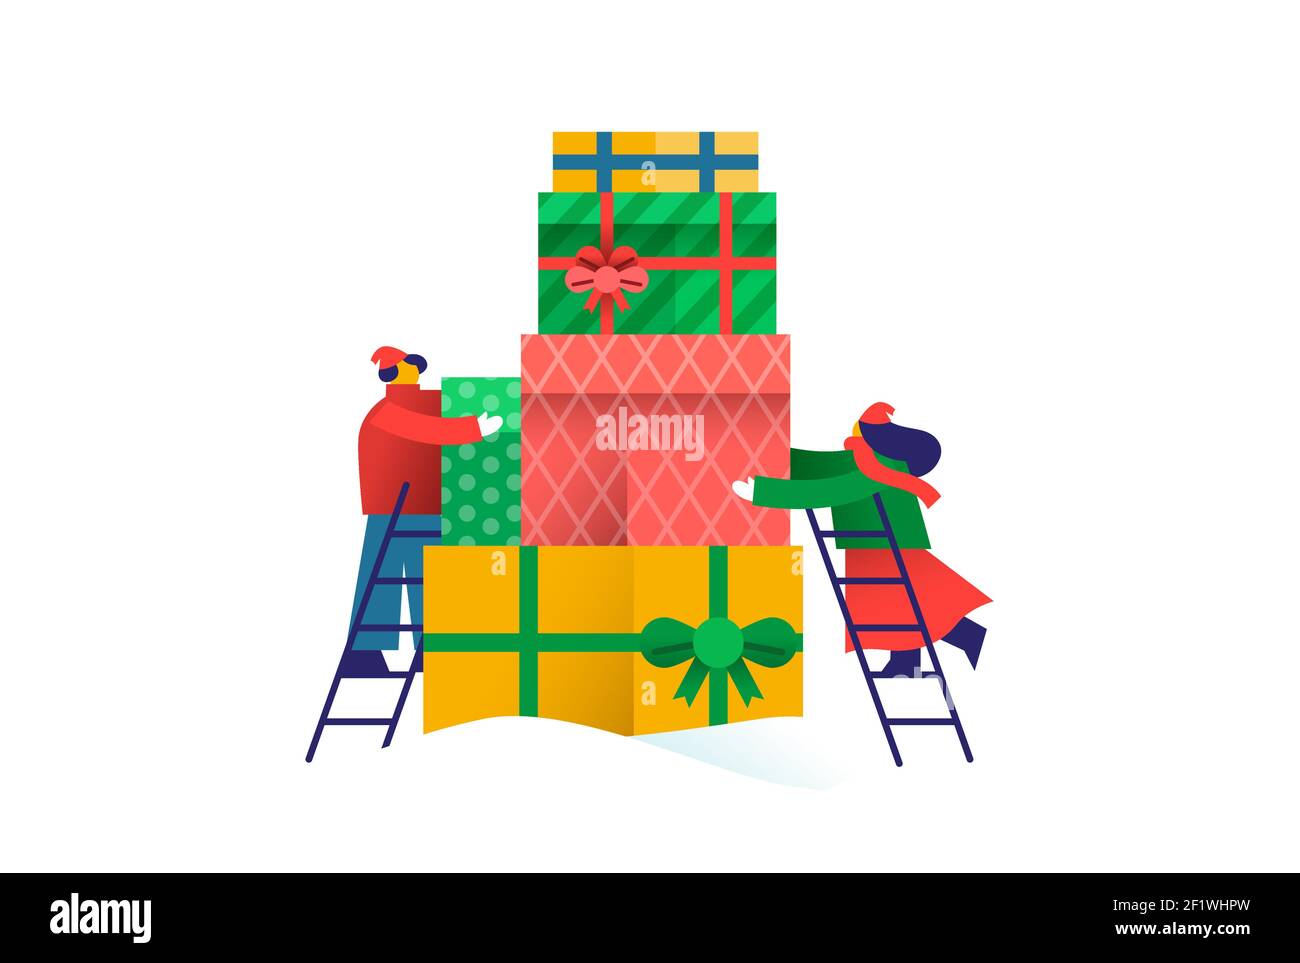 Mann und Frau Freunde organisieren weihnachtsgeschenkboxen. Teamwork-Konzept für die Weihnachtszeit Veranstaltung, Menschen Gruppe arbeiten zusammen in wohltätigen oder helfen org Stock Vektor